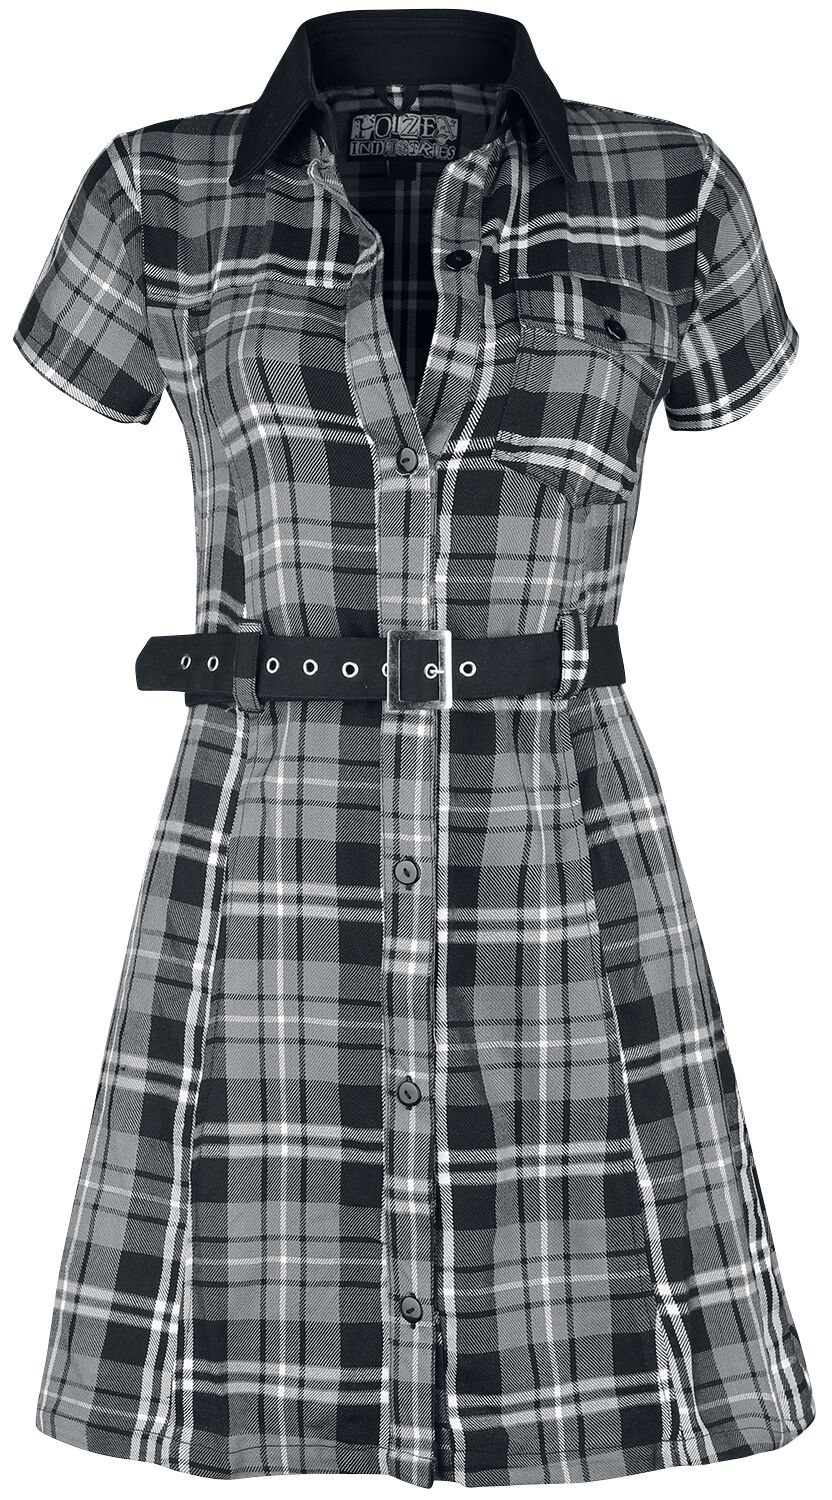 Poizen Industries Kurzes Kleid - Adelaide Dress - XS bis XXL - für Damen - Größe M - schwarz/grau/weiß